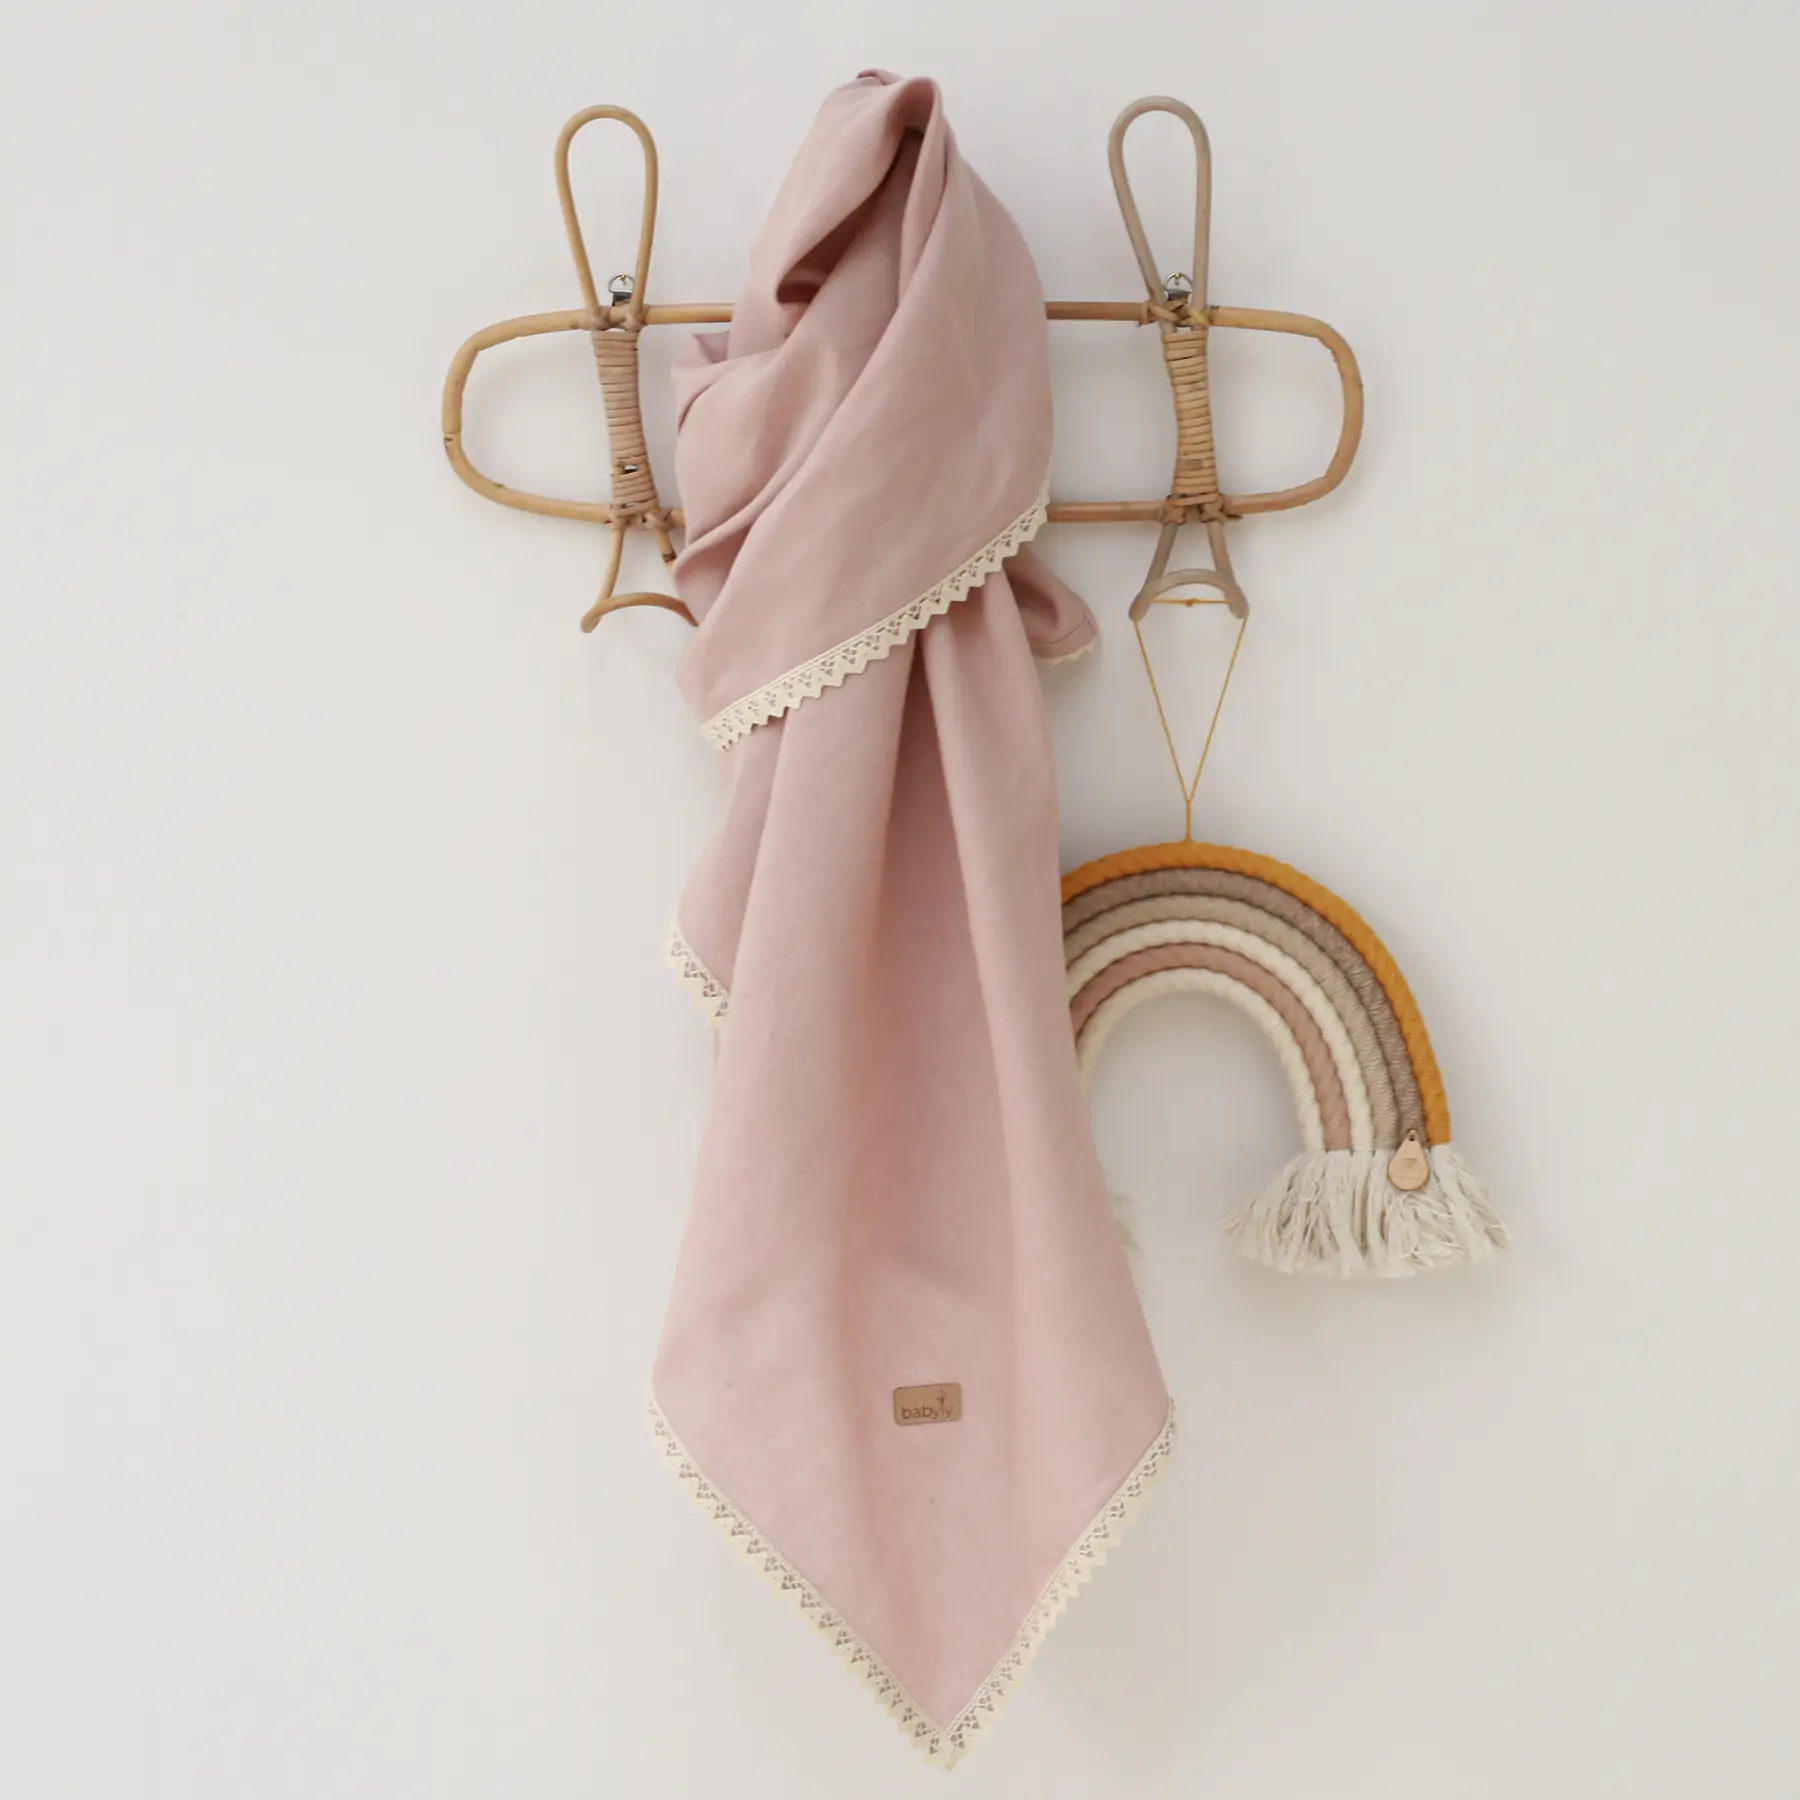 Paturica usoara pentru copii, multifunctionala, din in cu margini din dantela, roz pudra by babyly, 100x100cm